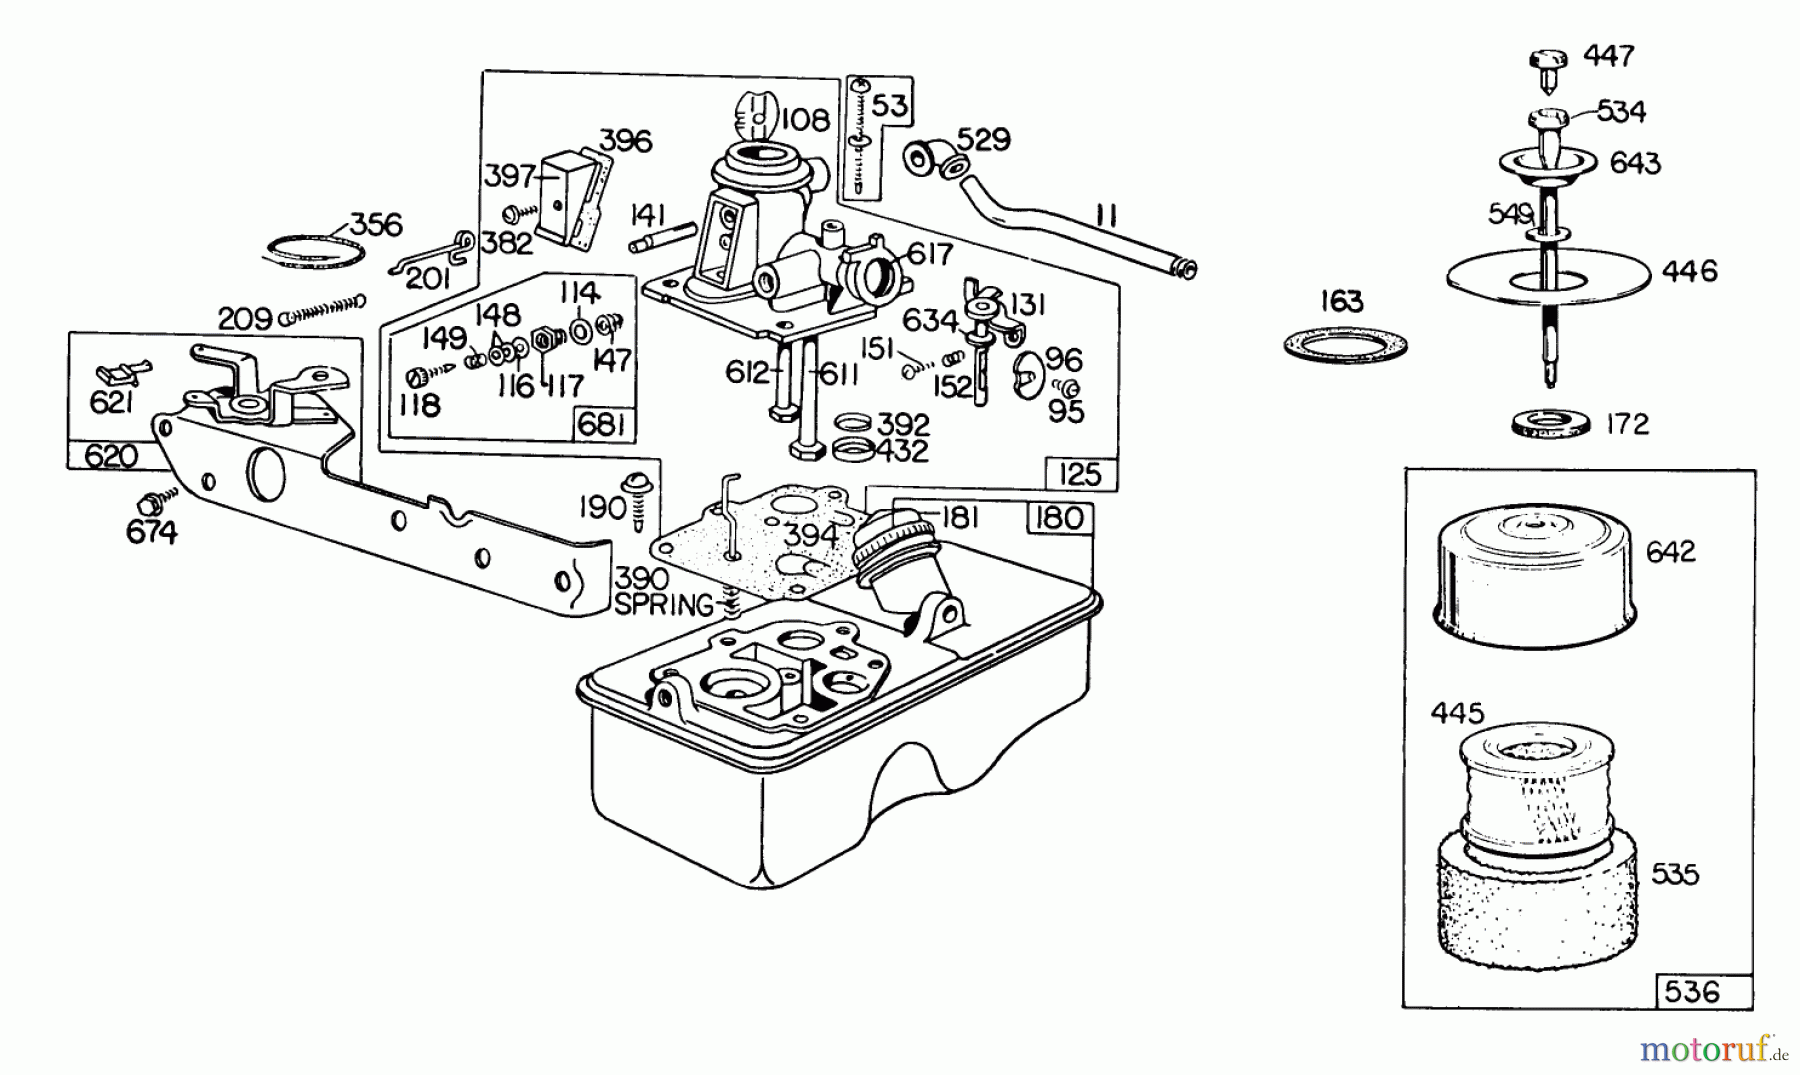  Toro Neu Mowers, Walk-Behind Seite 2 23400 - Toro Lawnmower, 1980 (0000001-0999999) ENGINE BRIGGS & STRATTON MODEL 110908-0492-01 #1